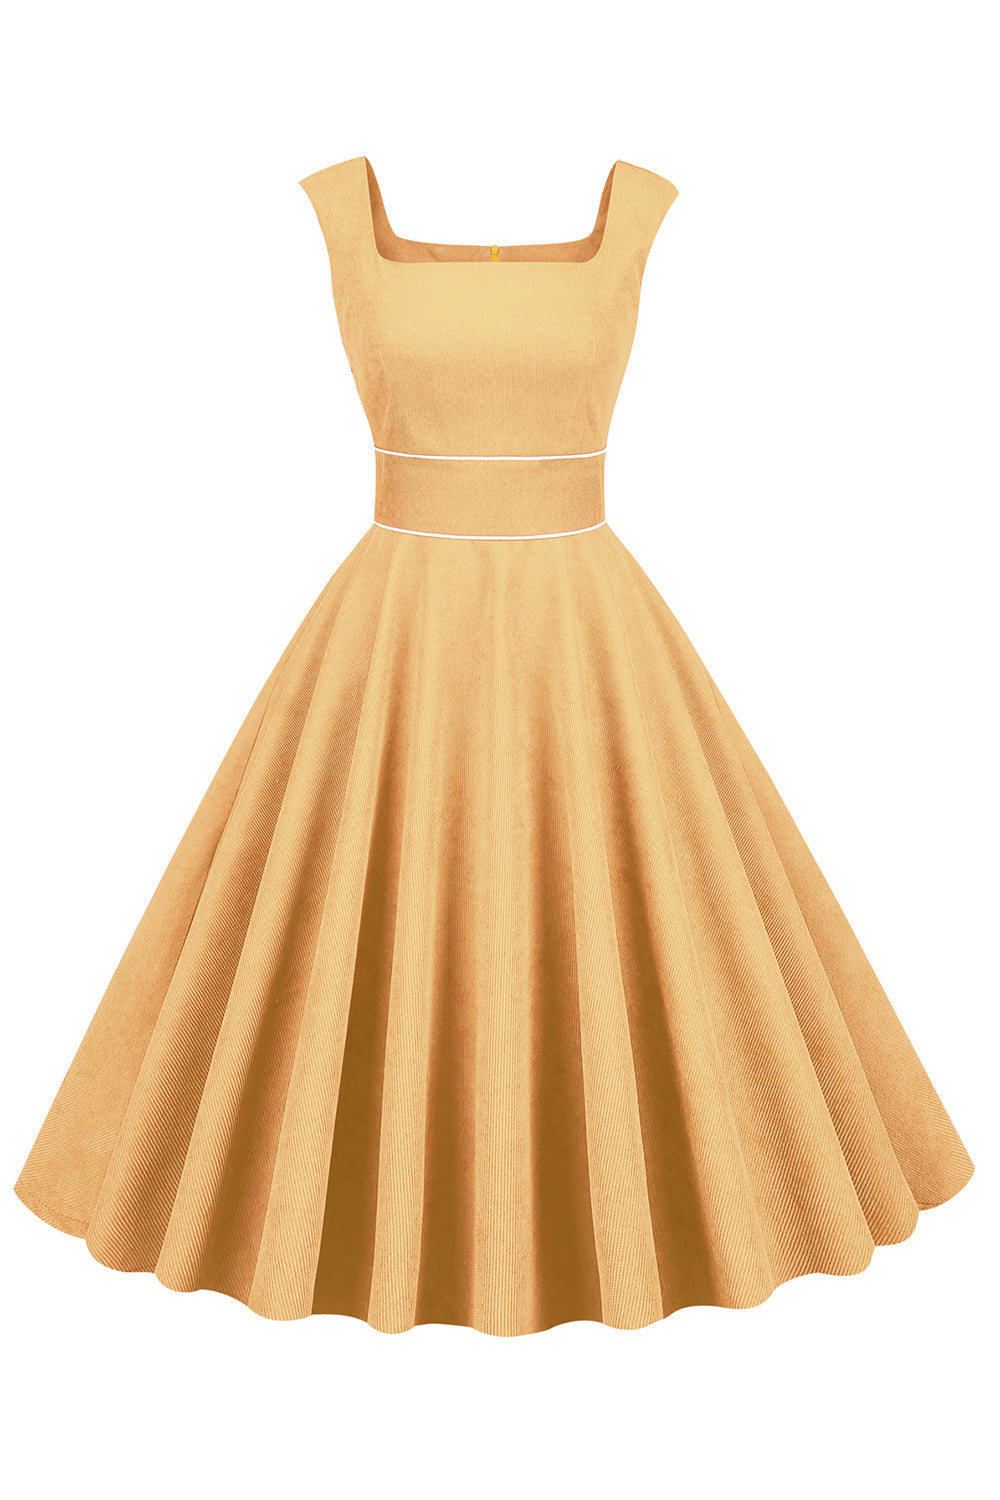 Żółta Sukienki Lata 50 z Kieszenie